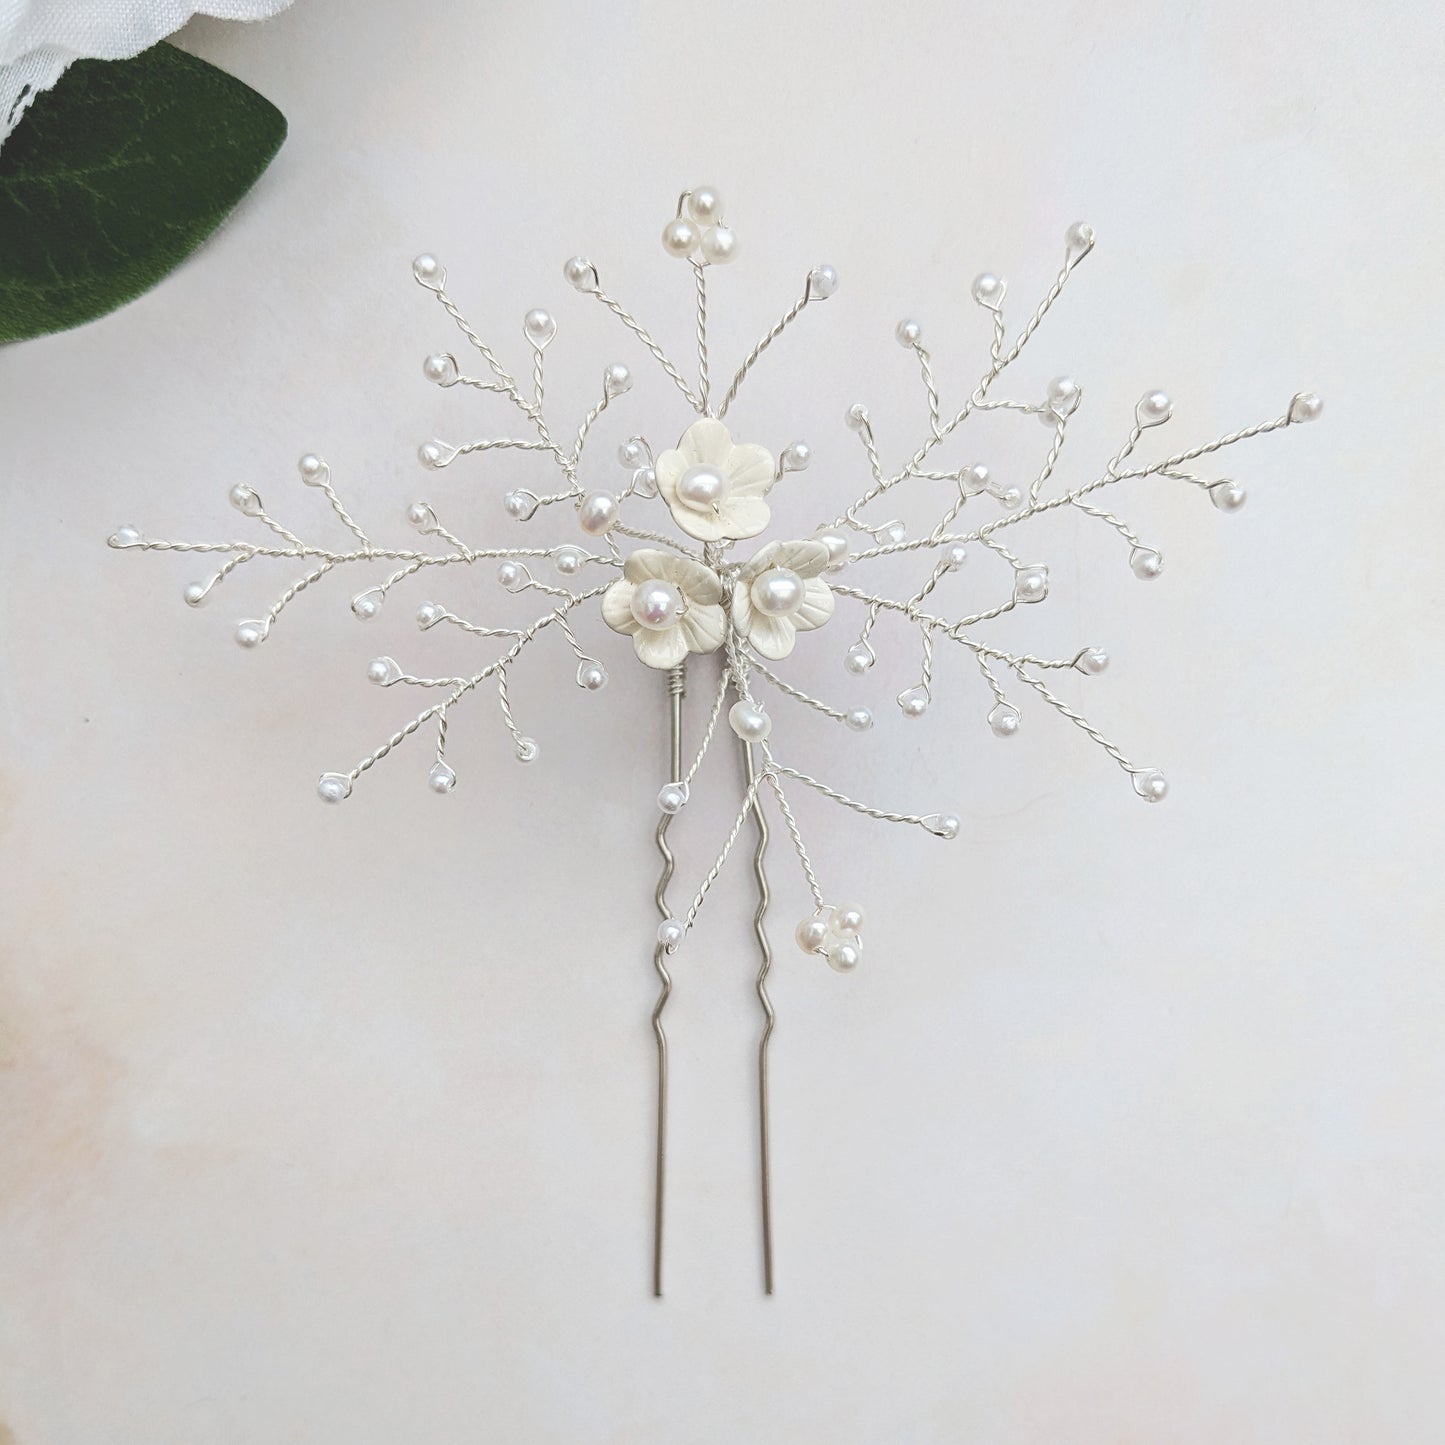 Modern white floral hair pins - Susie Warner